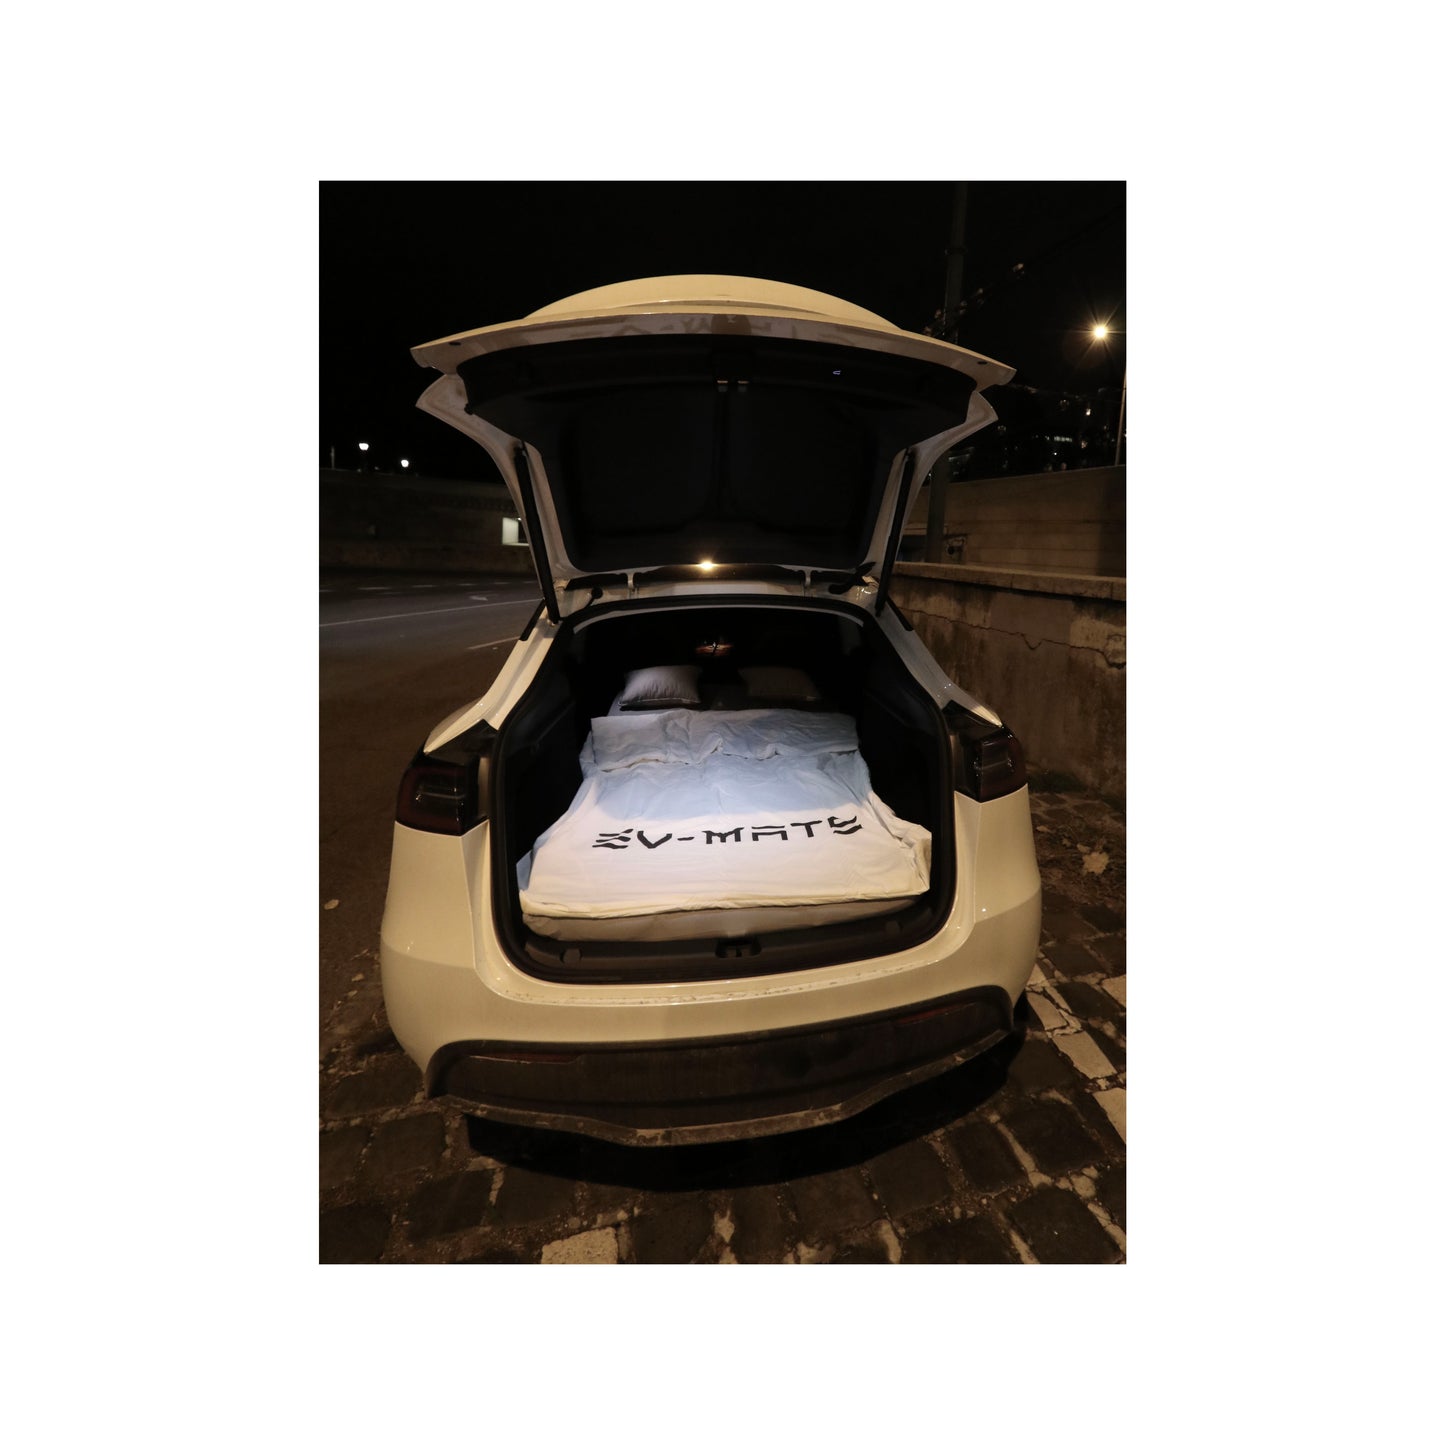  EV-MATS Basic CAMP SET Tesla Model 3-hoz, ami tartalmazza a Tesla matracot, a vízálló táskát, ami passzol a Tesla Model 3 hátsó csomagtartójába, egy lepedőt, egy paplant, 2 párnát és párnahuzatot